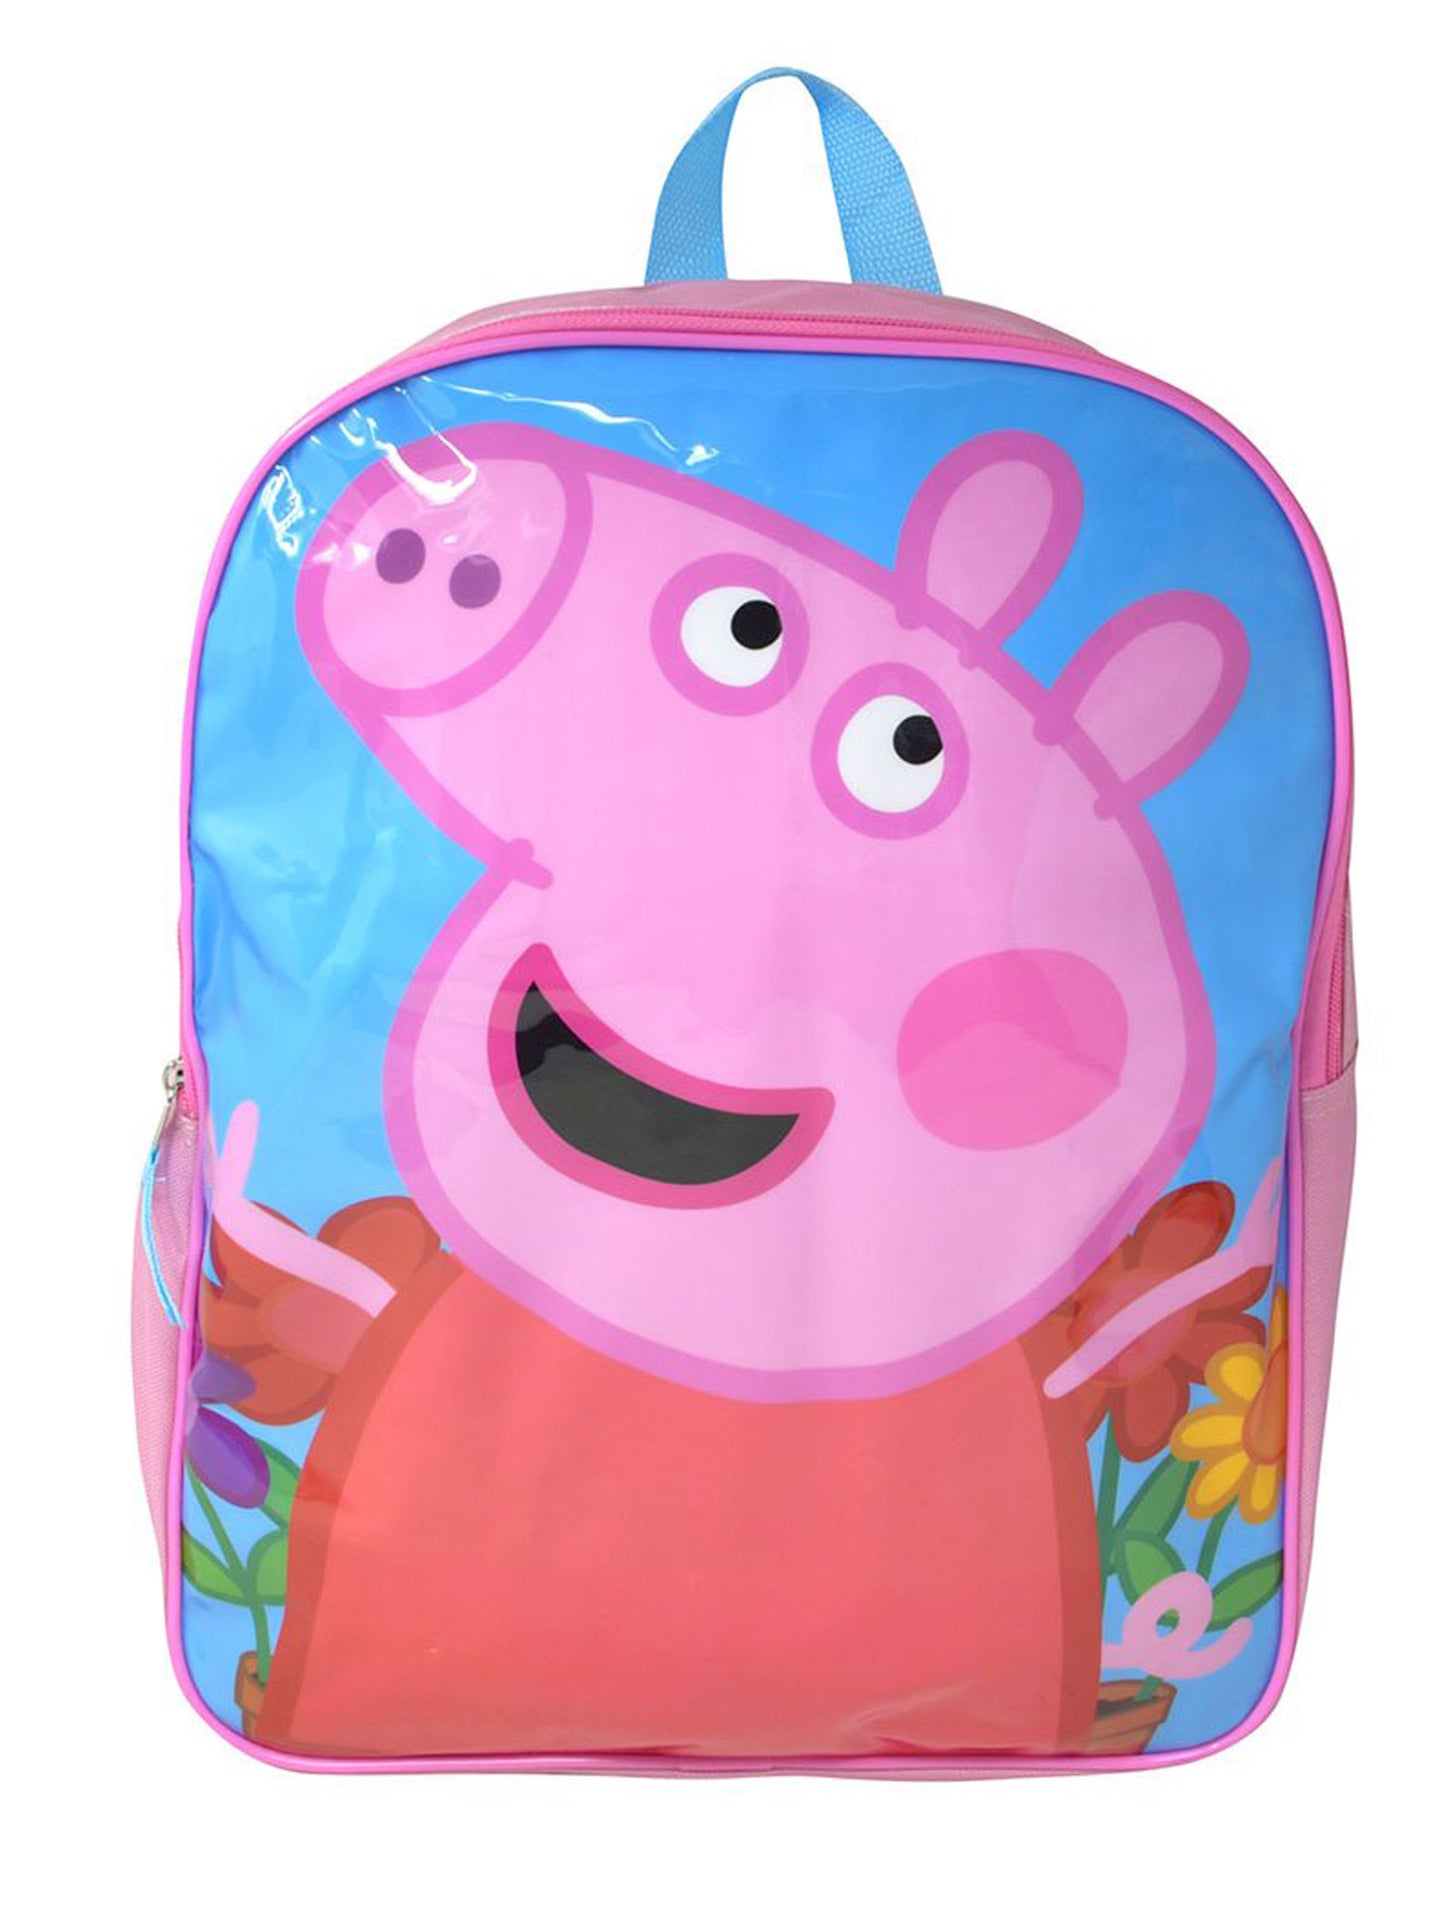 Girls Peppa Pig Backpack 15" School Bag Pink Flowers Camp Travel Kids